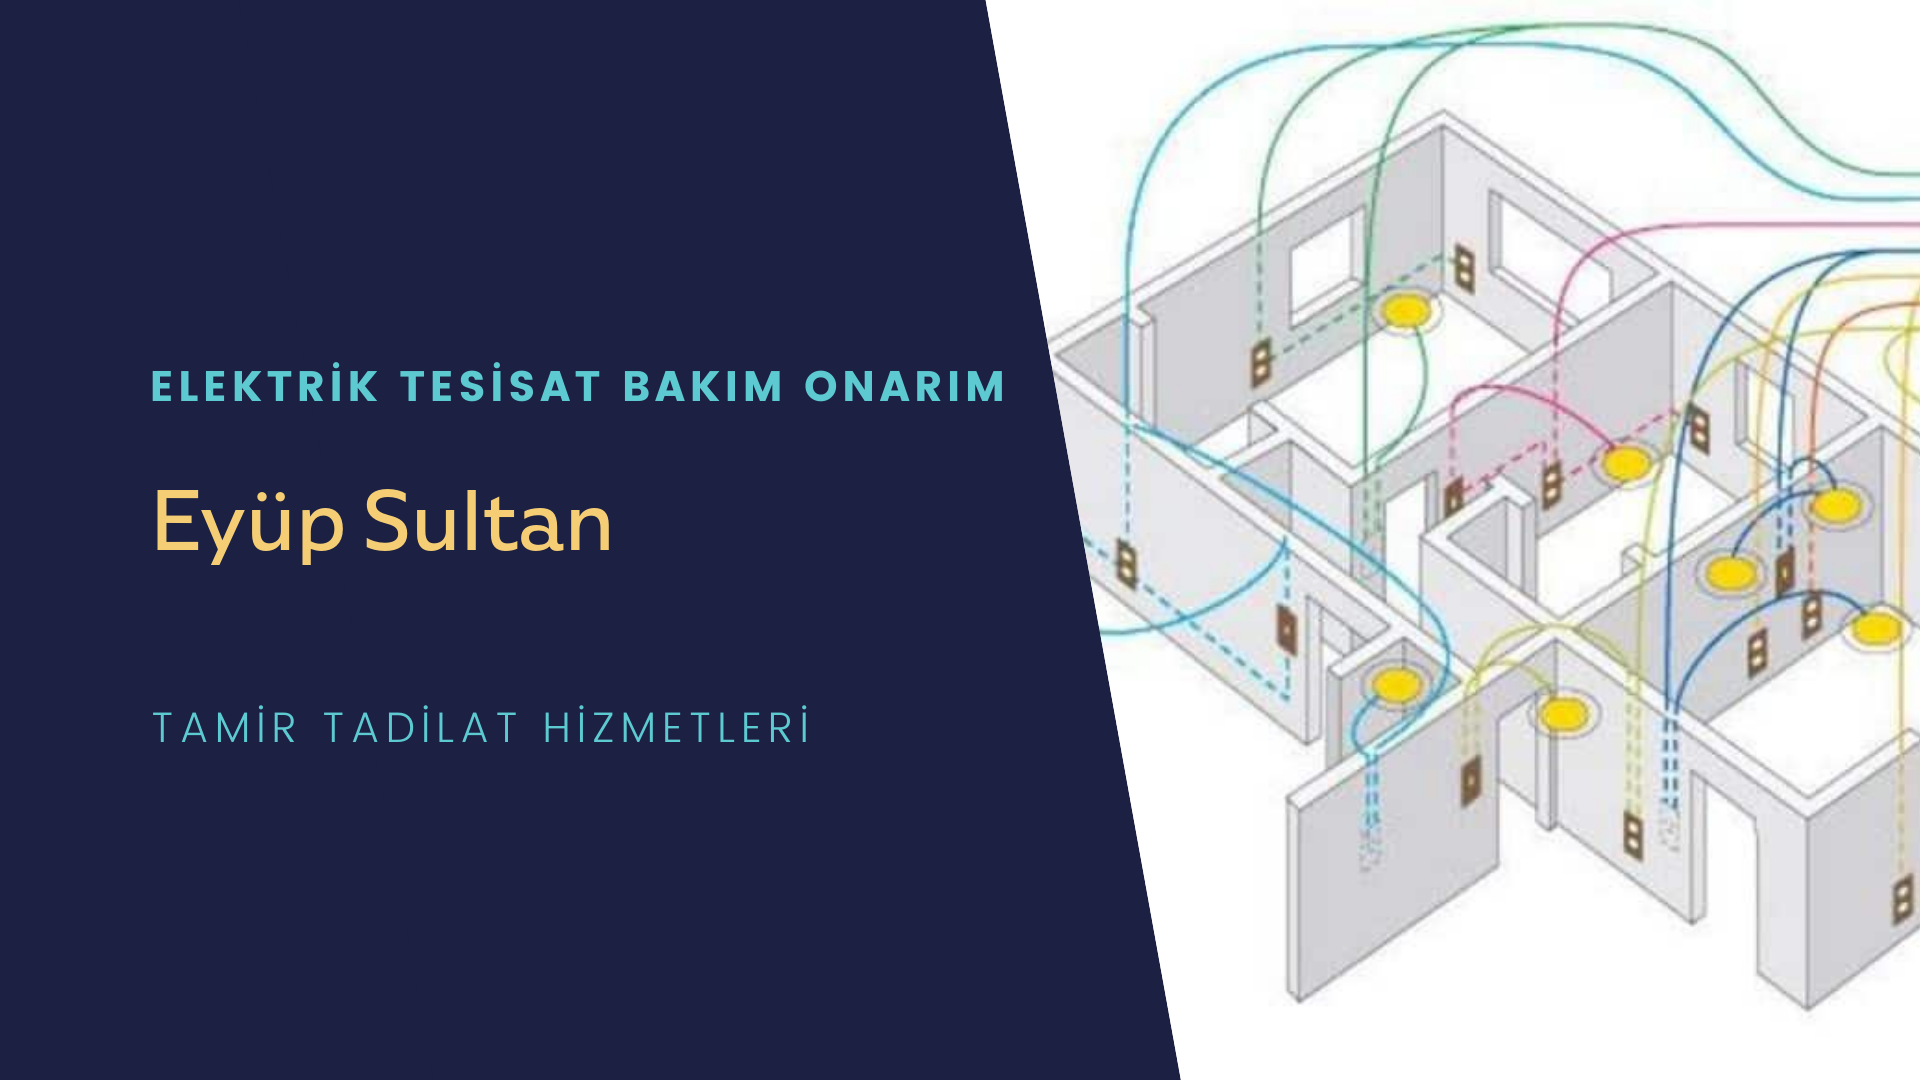 Eyüp Sultan   elektrik tesisatı ustalarımı arıyorsunuz doğru adrestenizi Eyüp Sultan  elektrik tesisatı ustalarımız 7/24 sizlere hizmet vermekten mutluluk duyar.